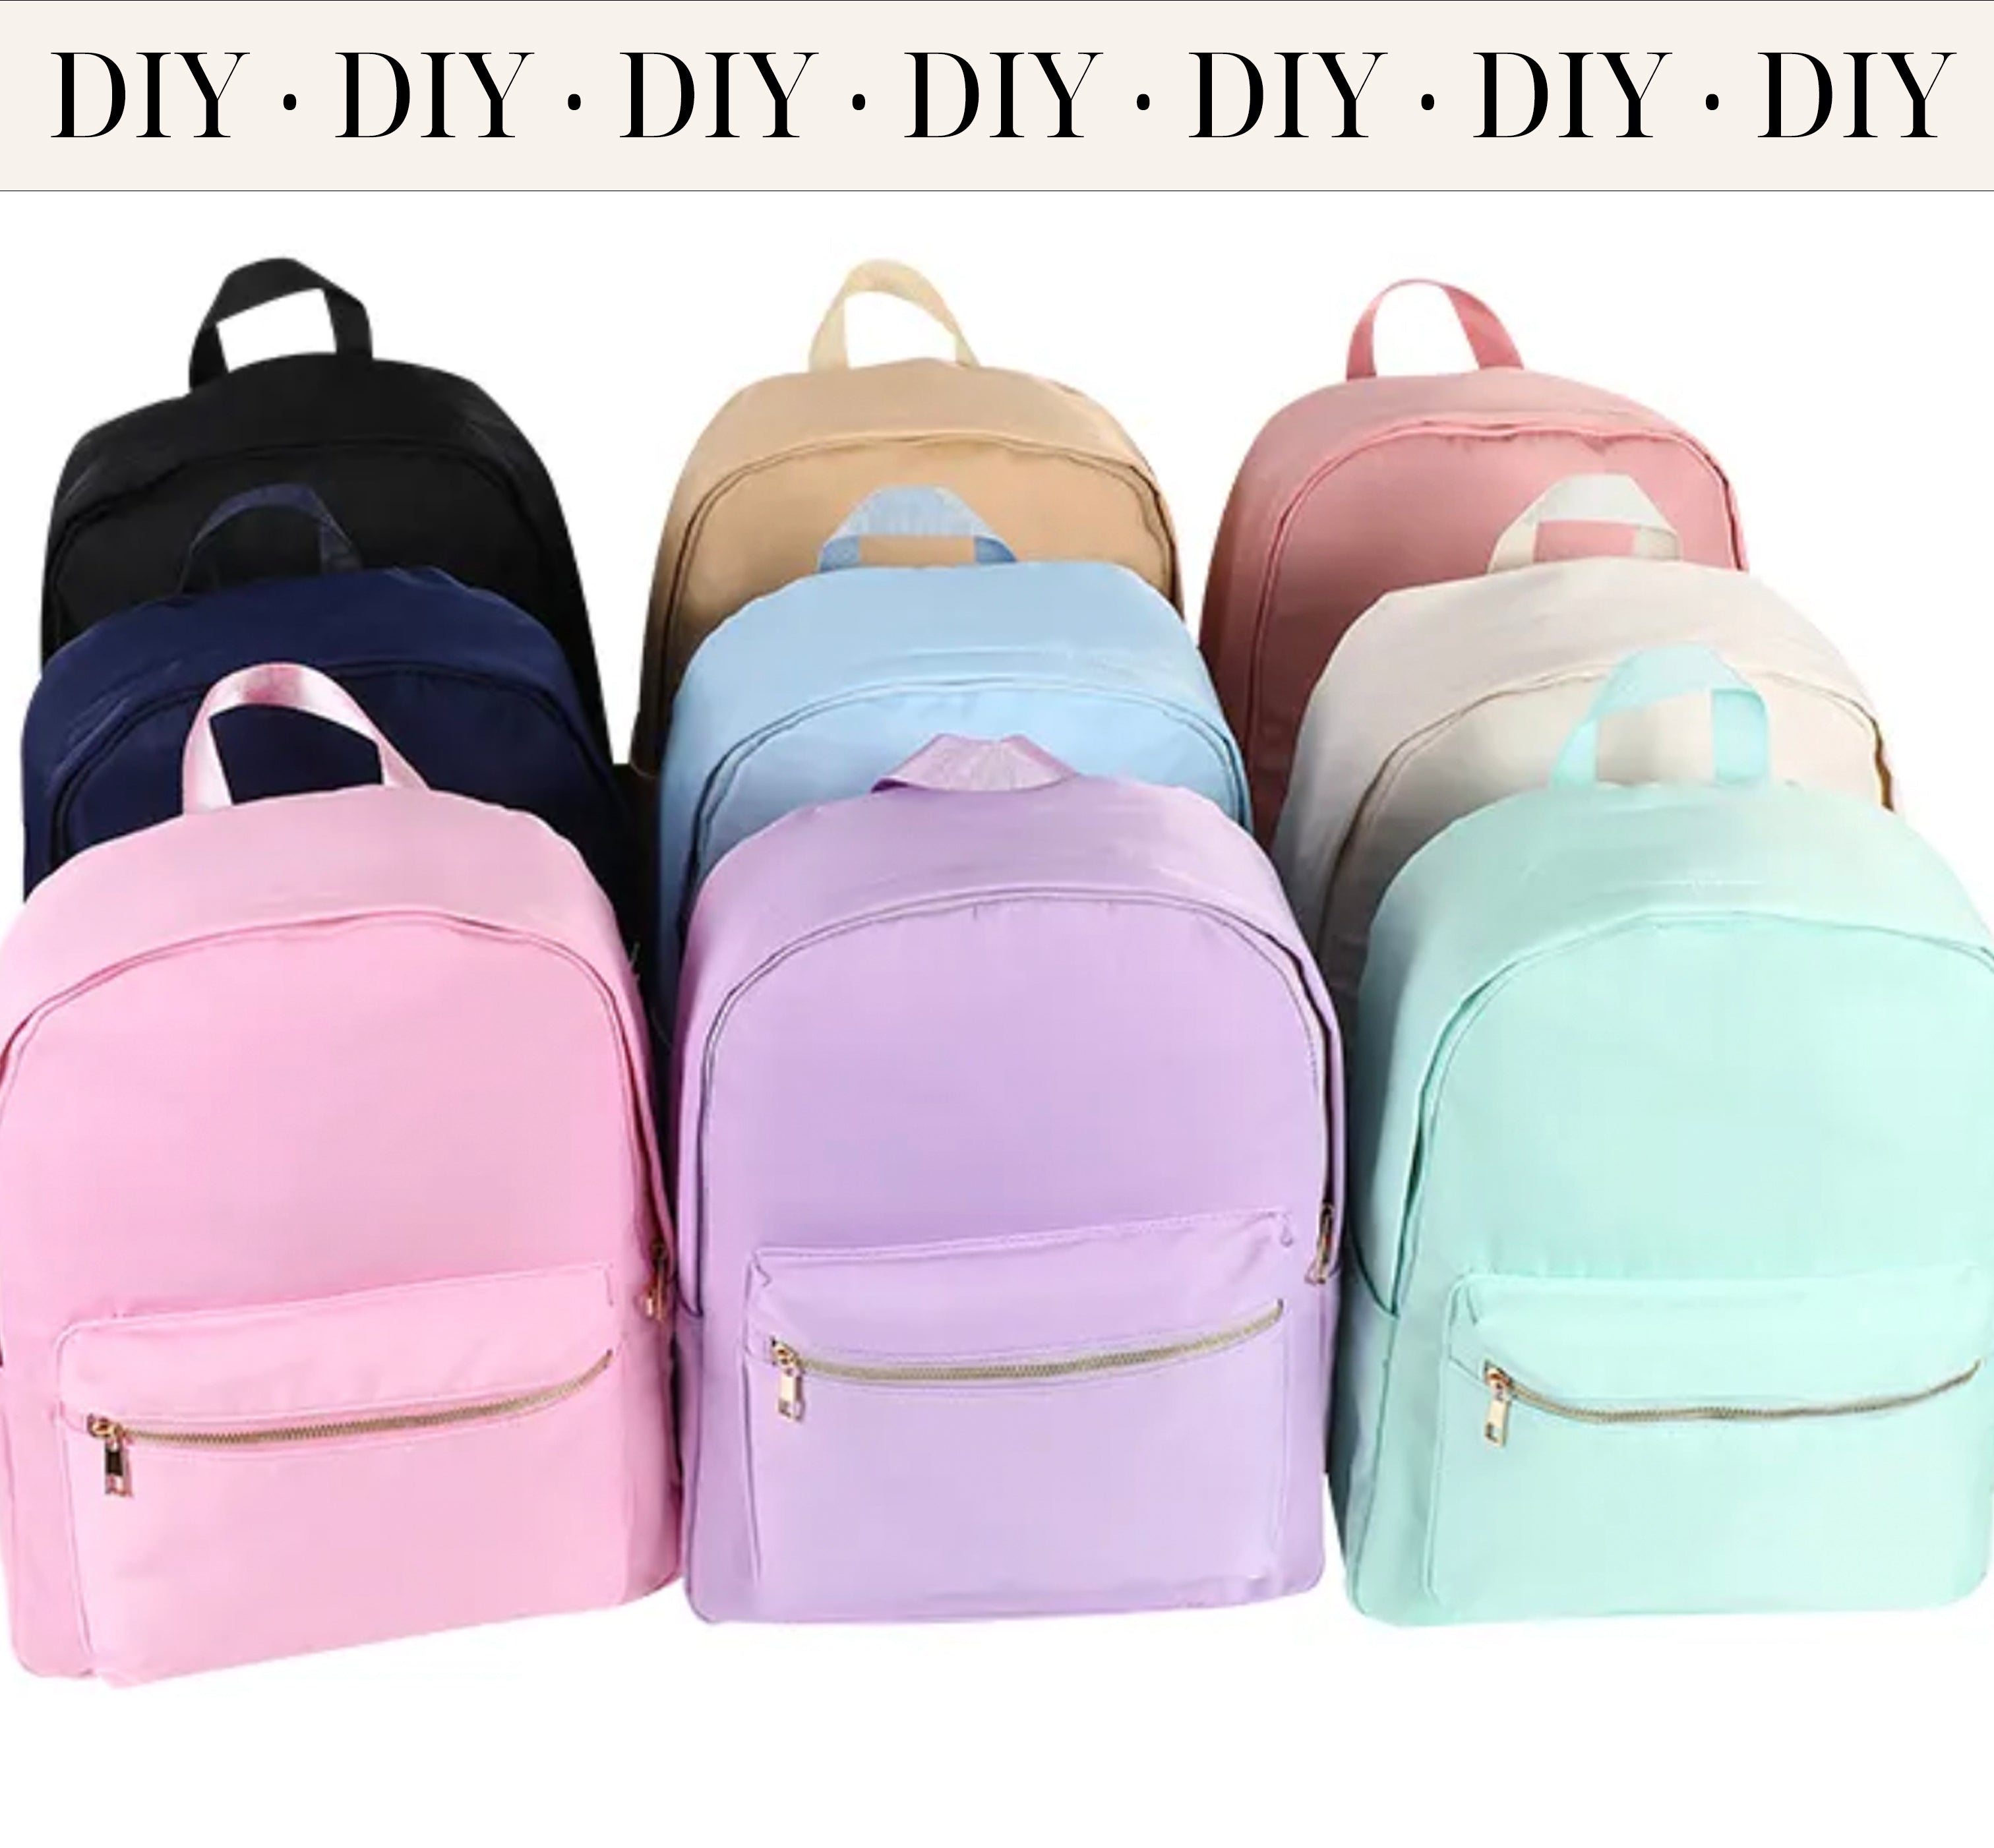 diy backpack